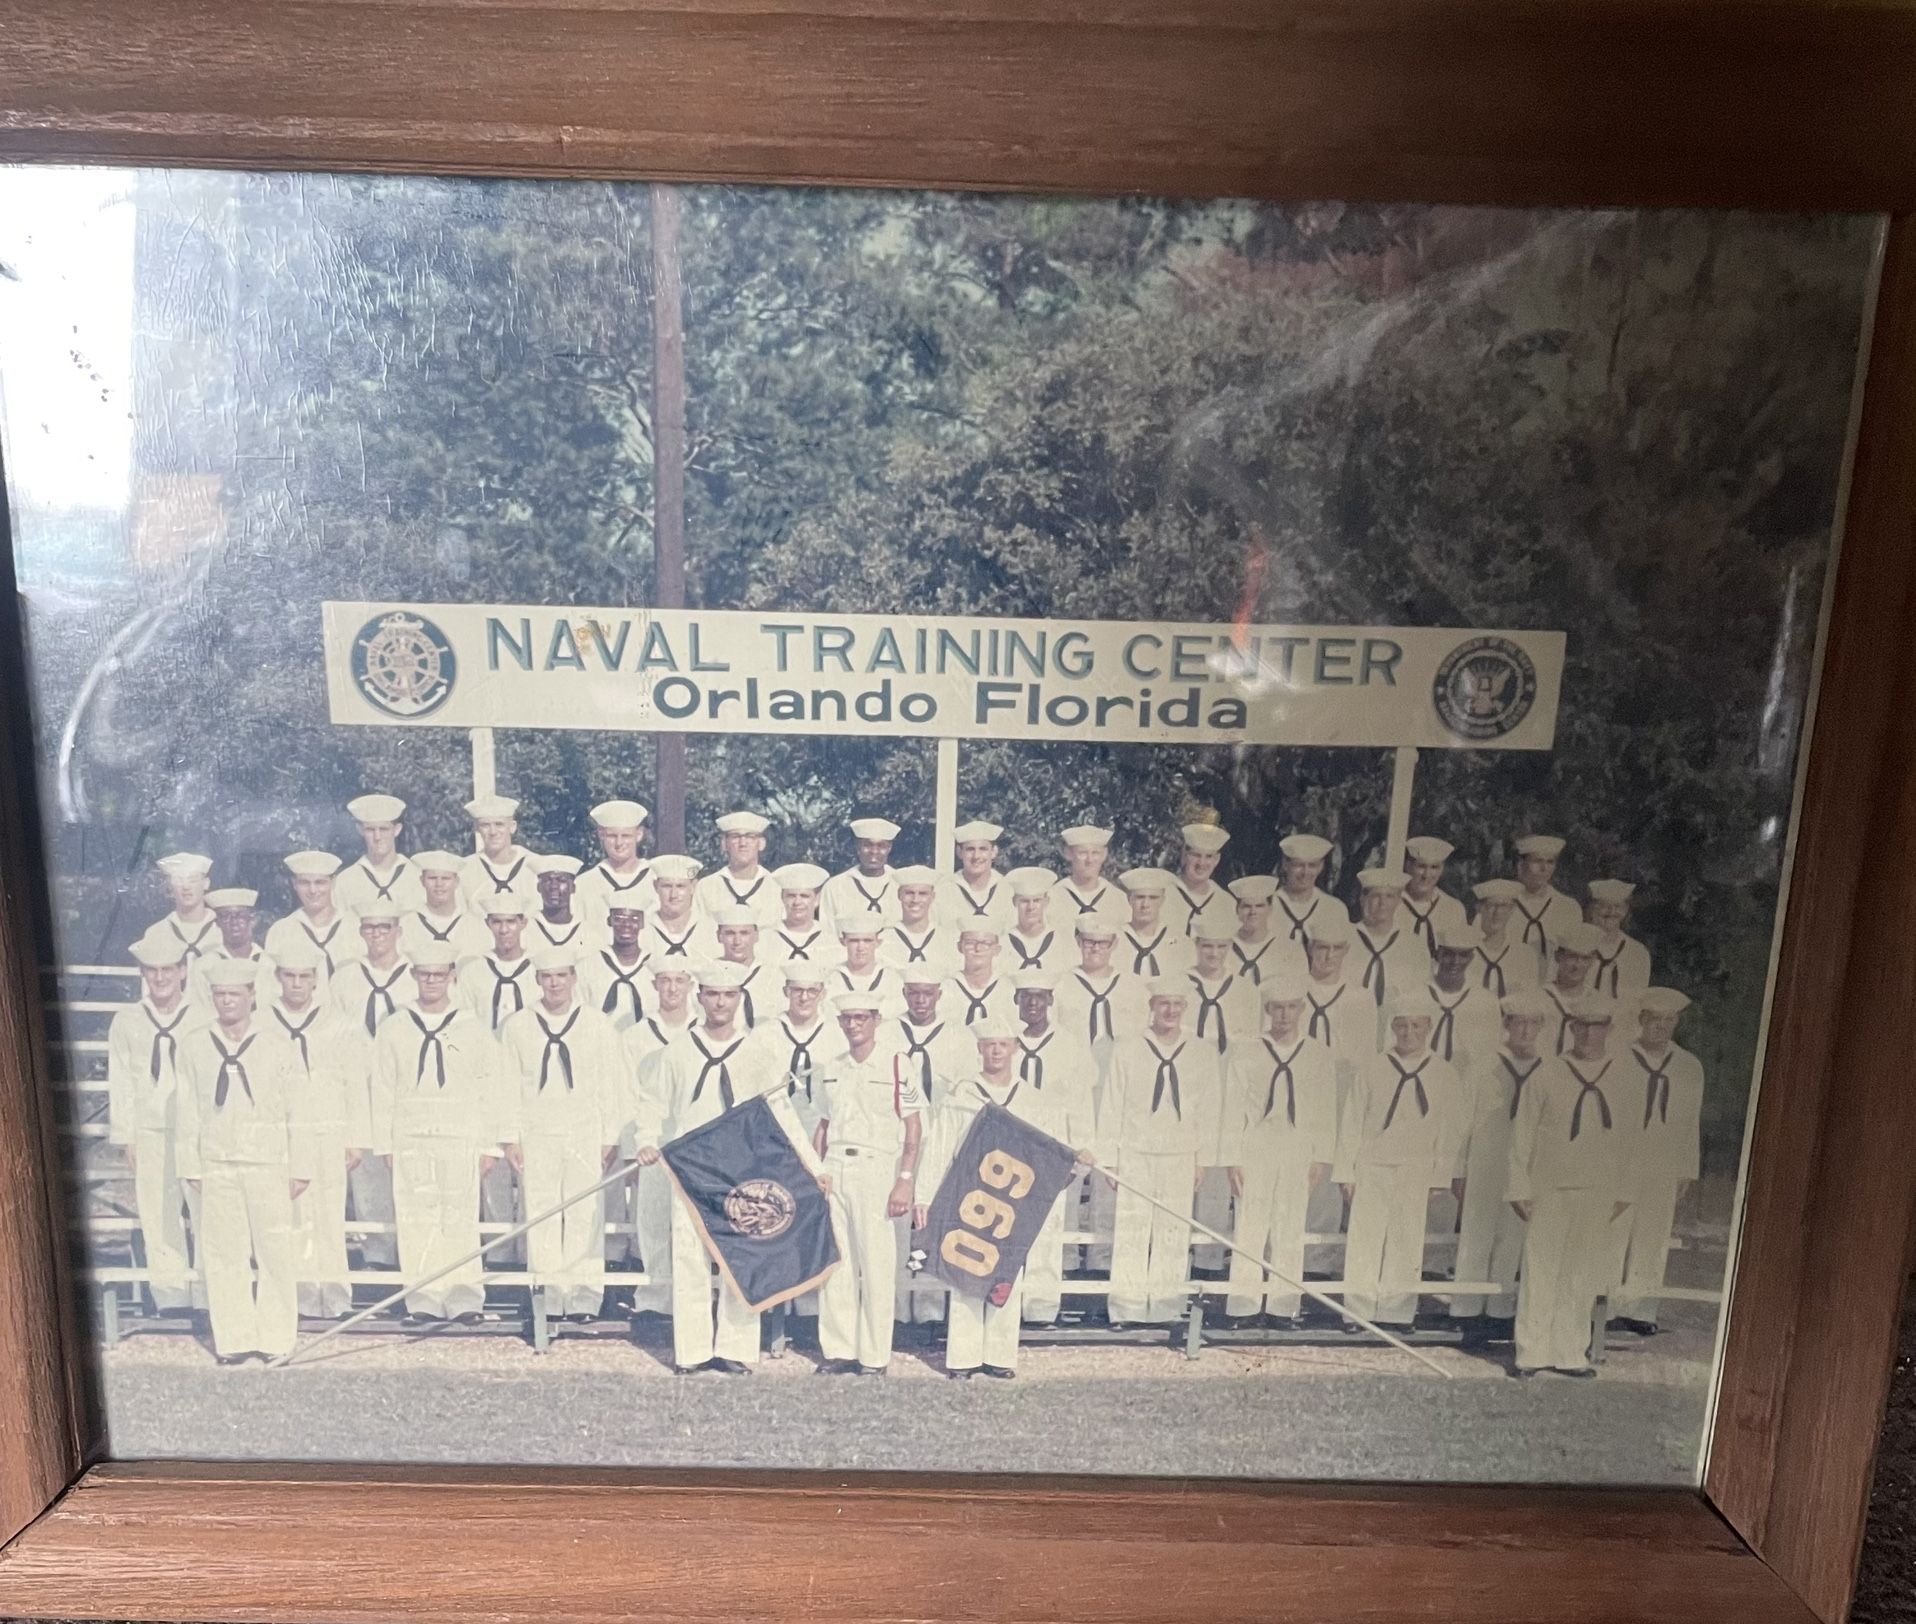 Naval Training Center “ORLANDO FLORIDA 099”